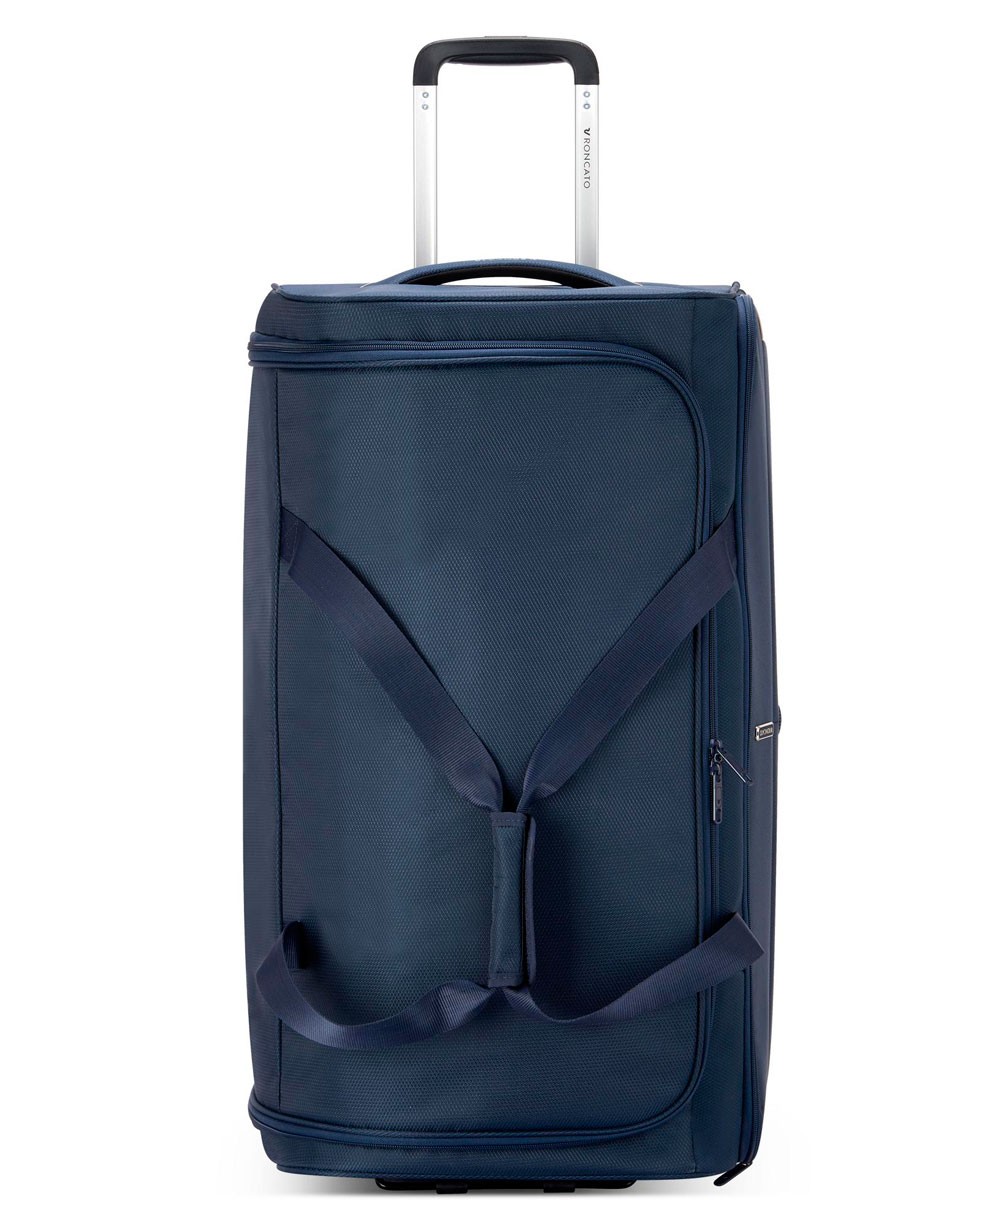 Bolsa de Viaje con Ruedas Roncato Ironik 2.0 Azul Marino - 70 cm